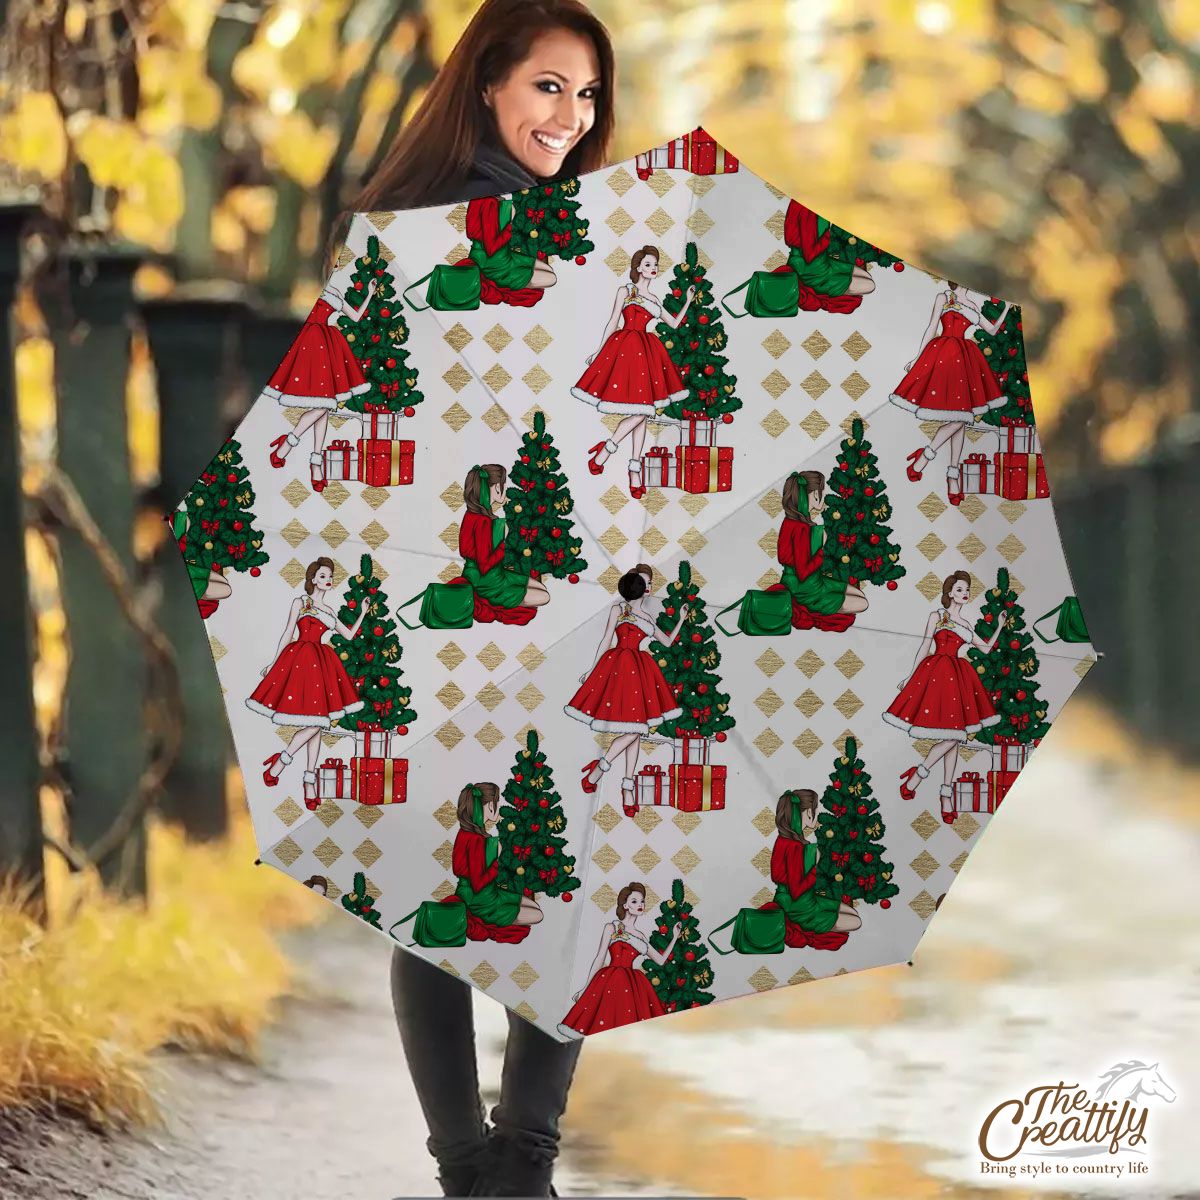 Christmas Girl With Christmas Tree Umbrella